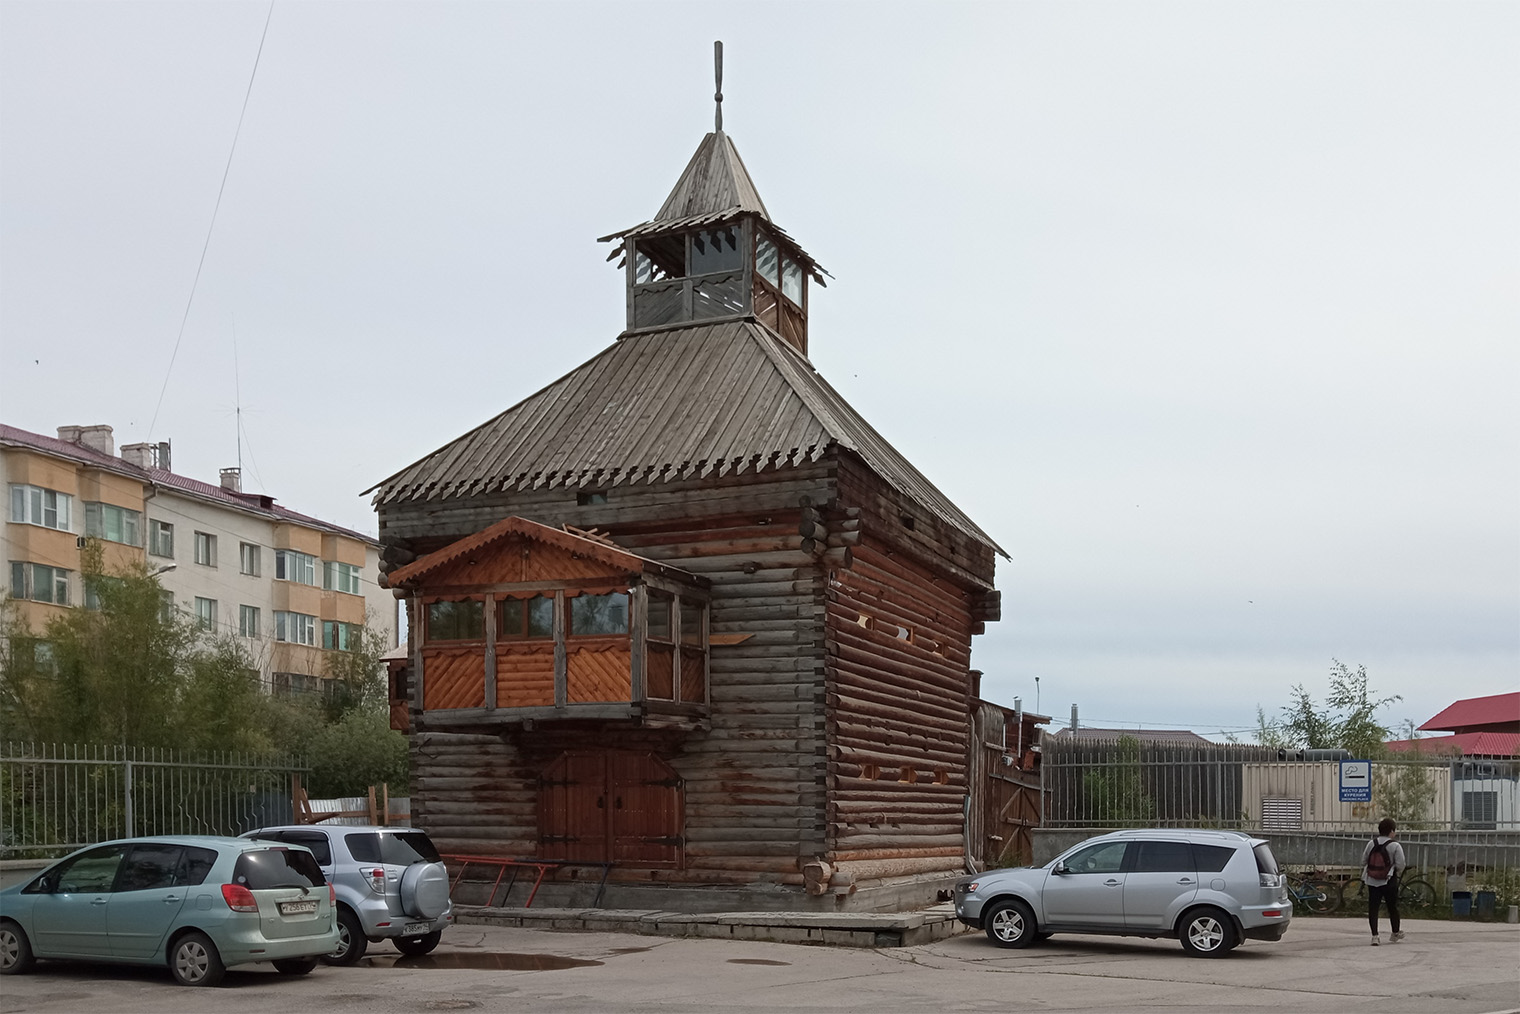 От Ленского острога осталась надвратная башня — символ Якутска. Она стояла на территории краеведческого музея, но в 2002 сгорела. В том же году точную копию башни поставили в квартале Старый город